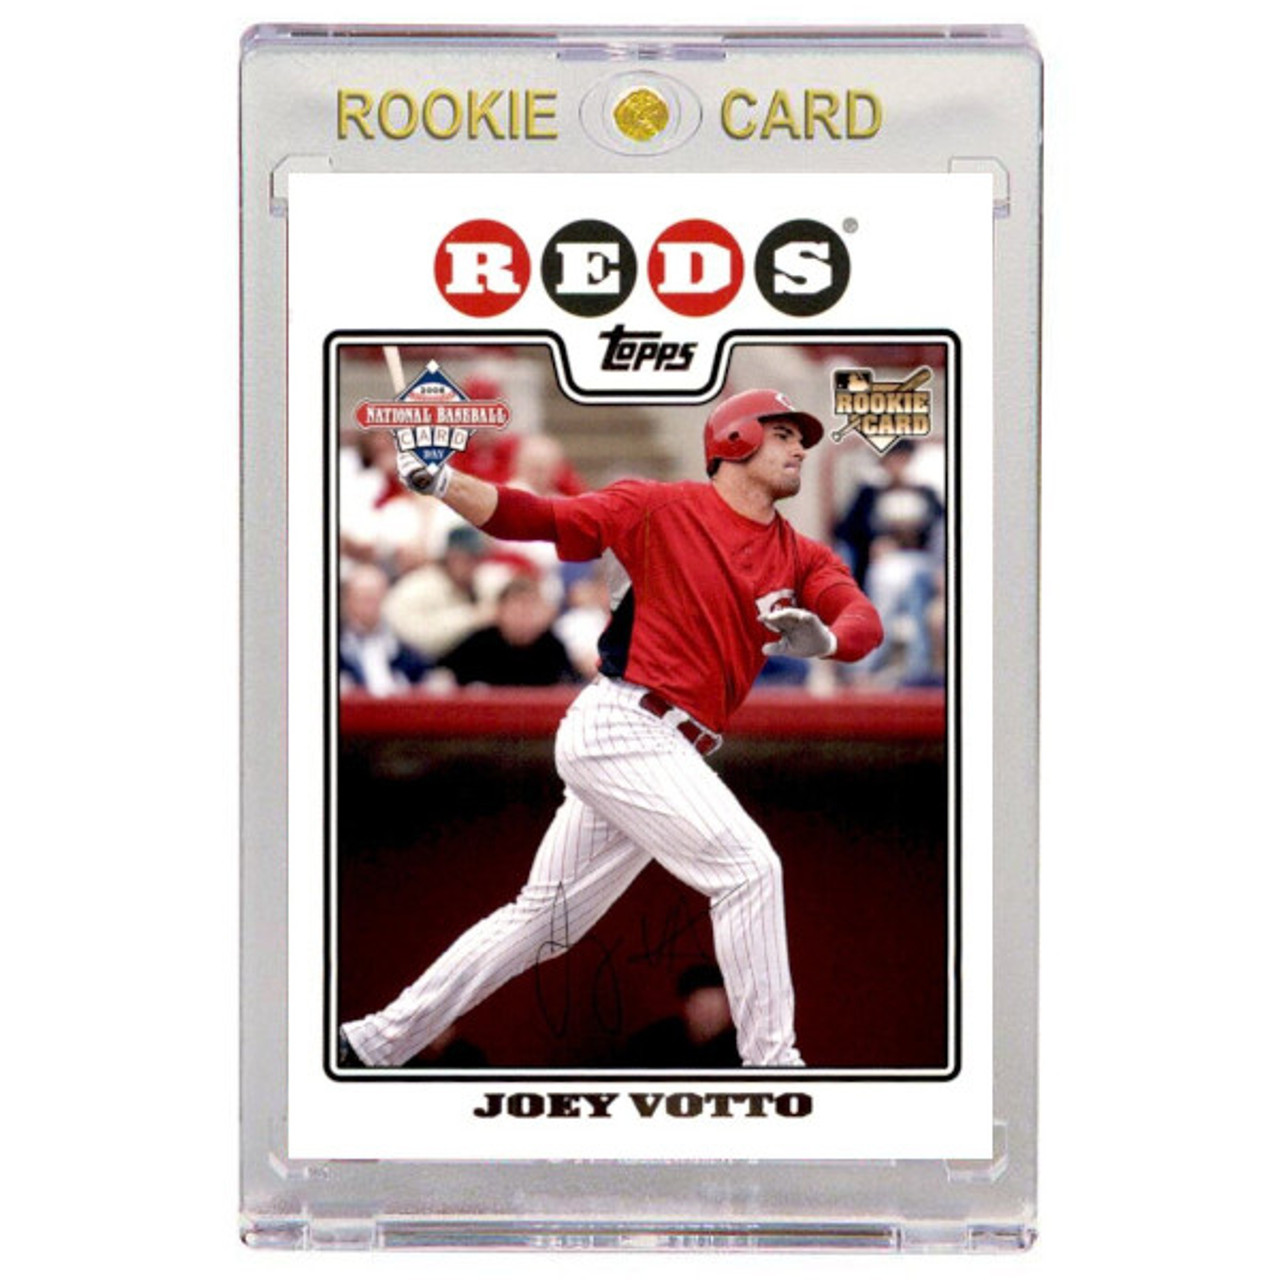 Joey Votto 2008 Upper Deck Rookie Card